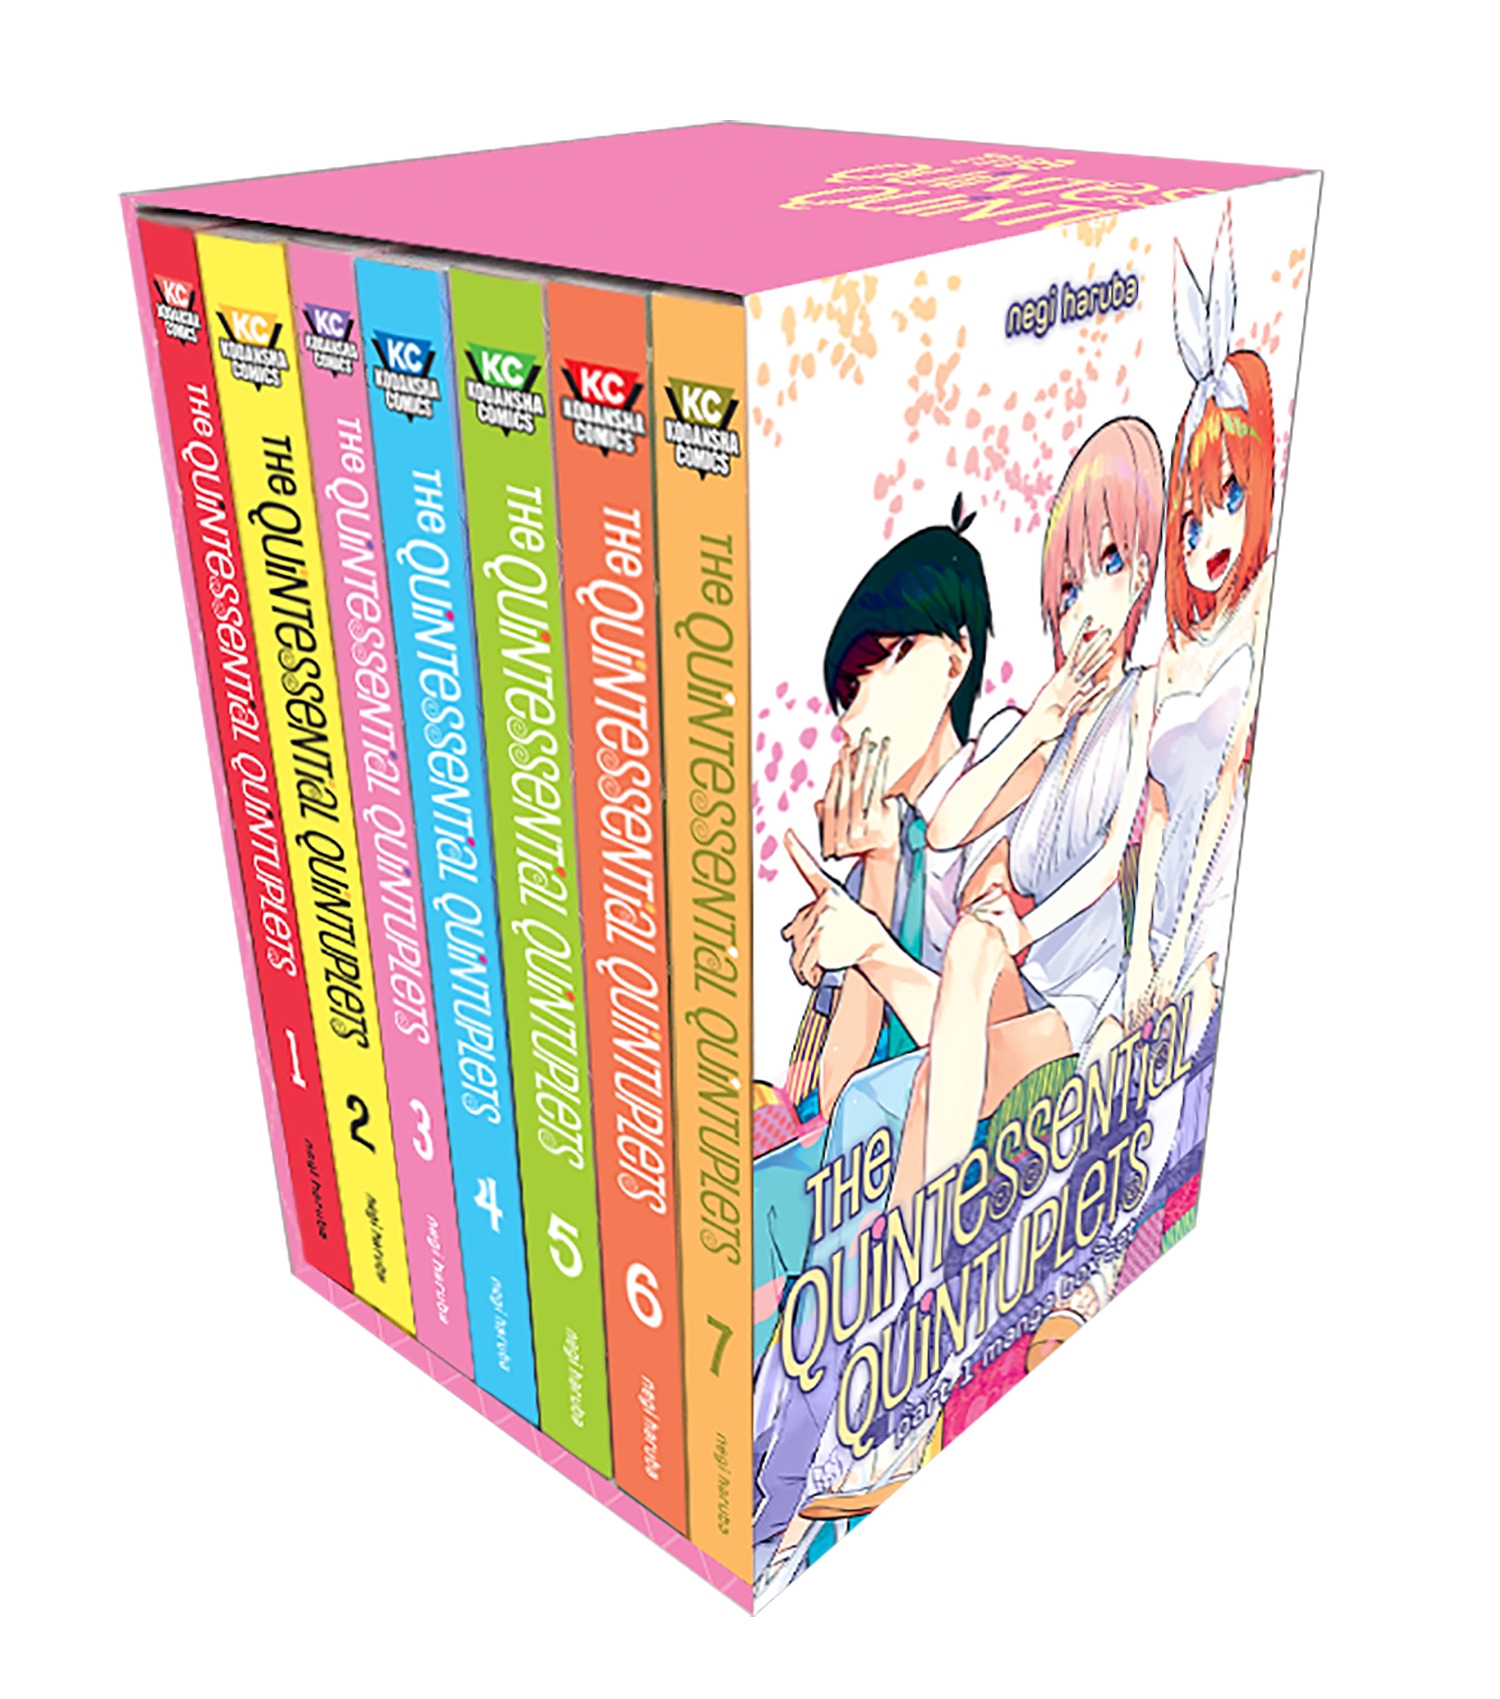 Quintessential Quintuplets Manga Volume 11 (Mature)